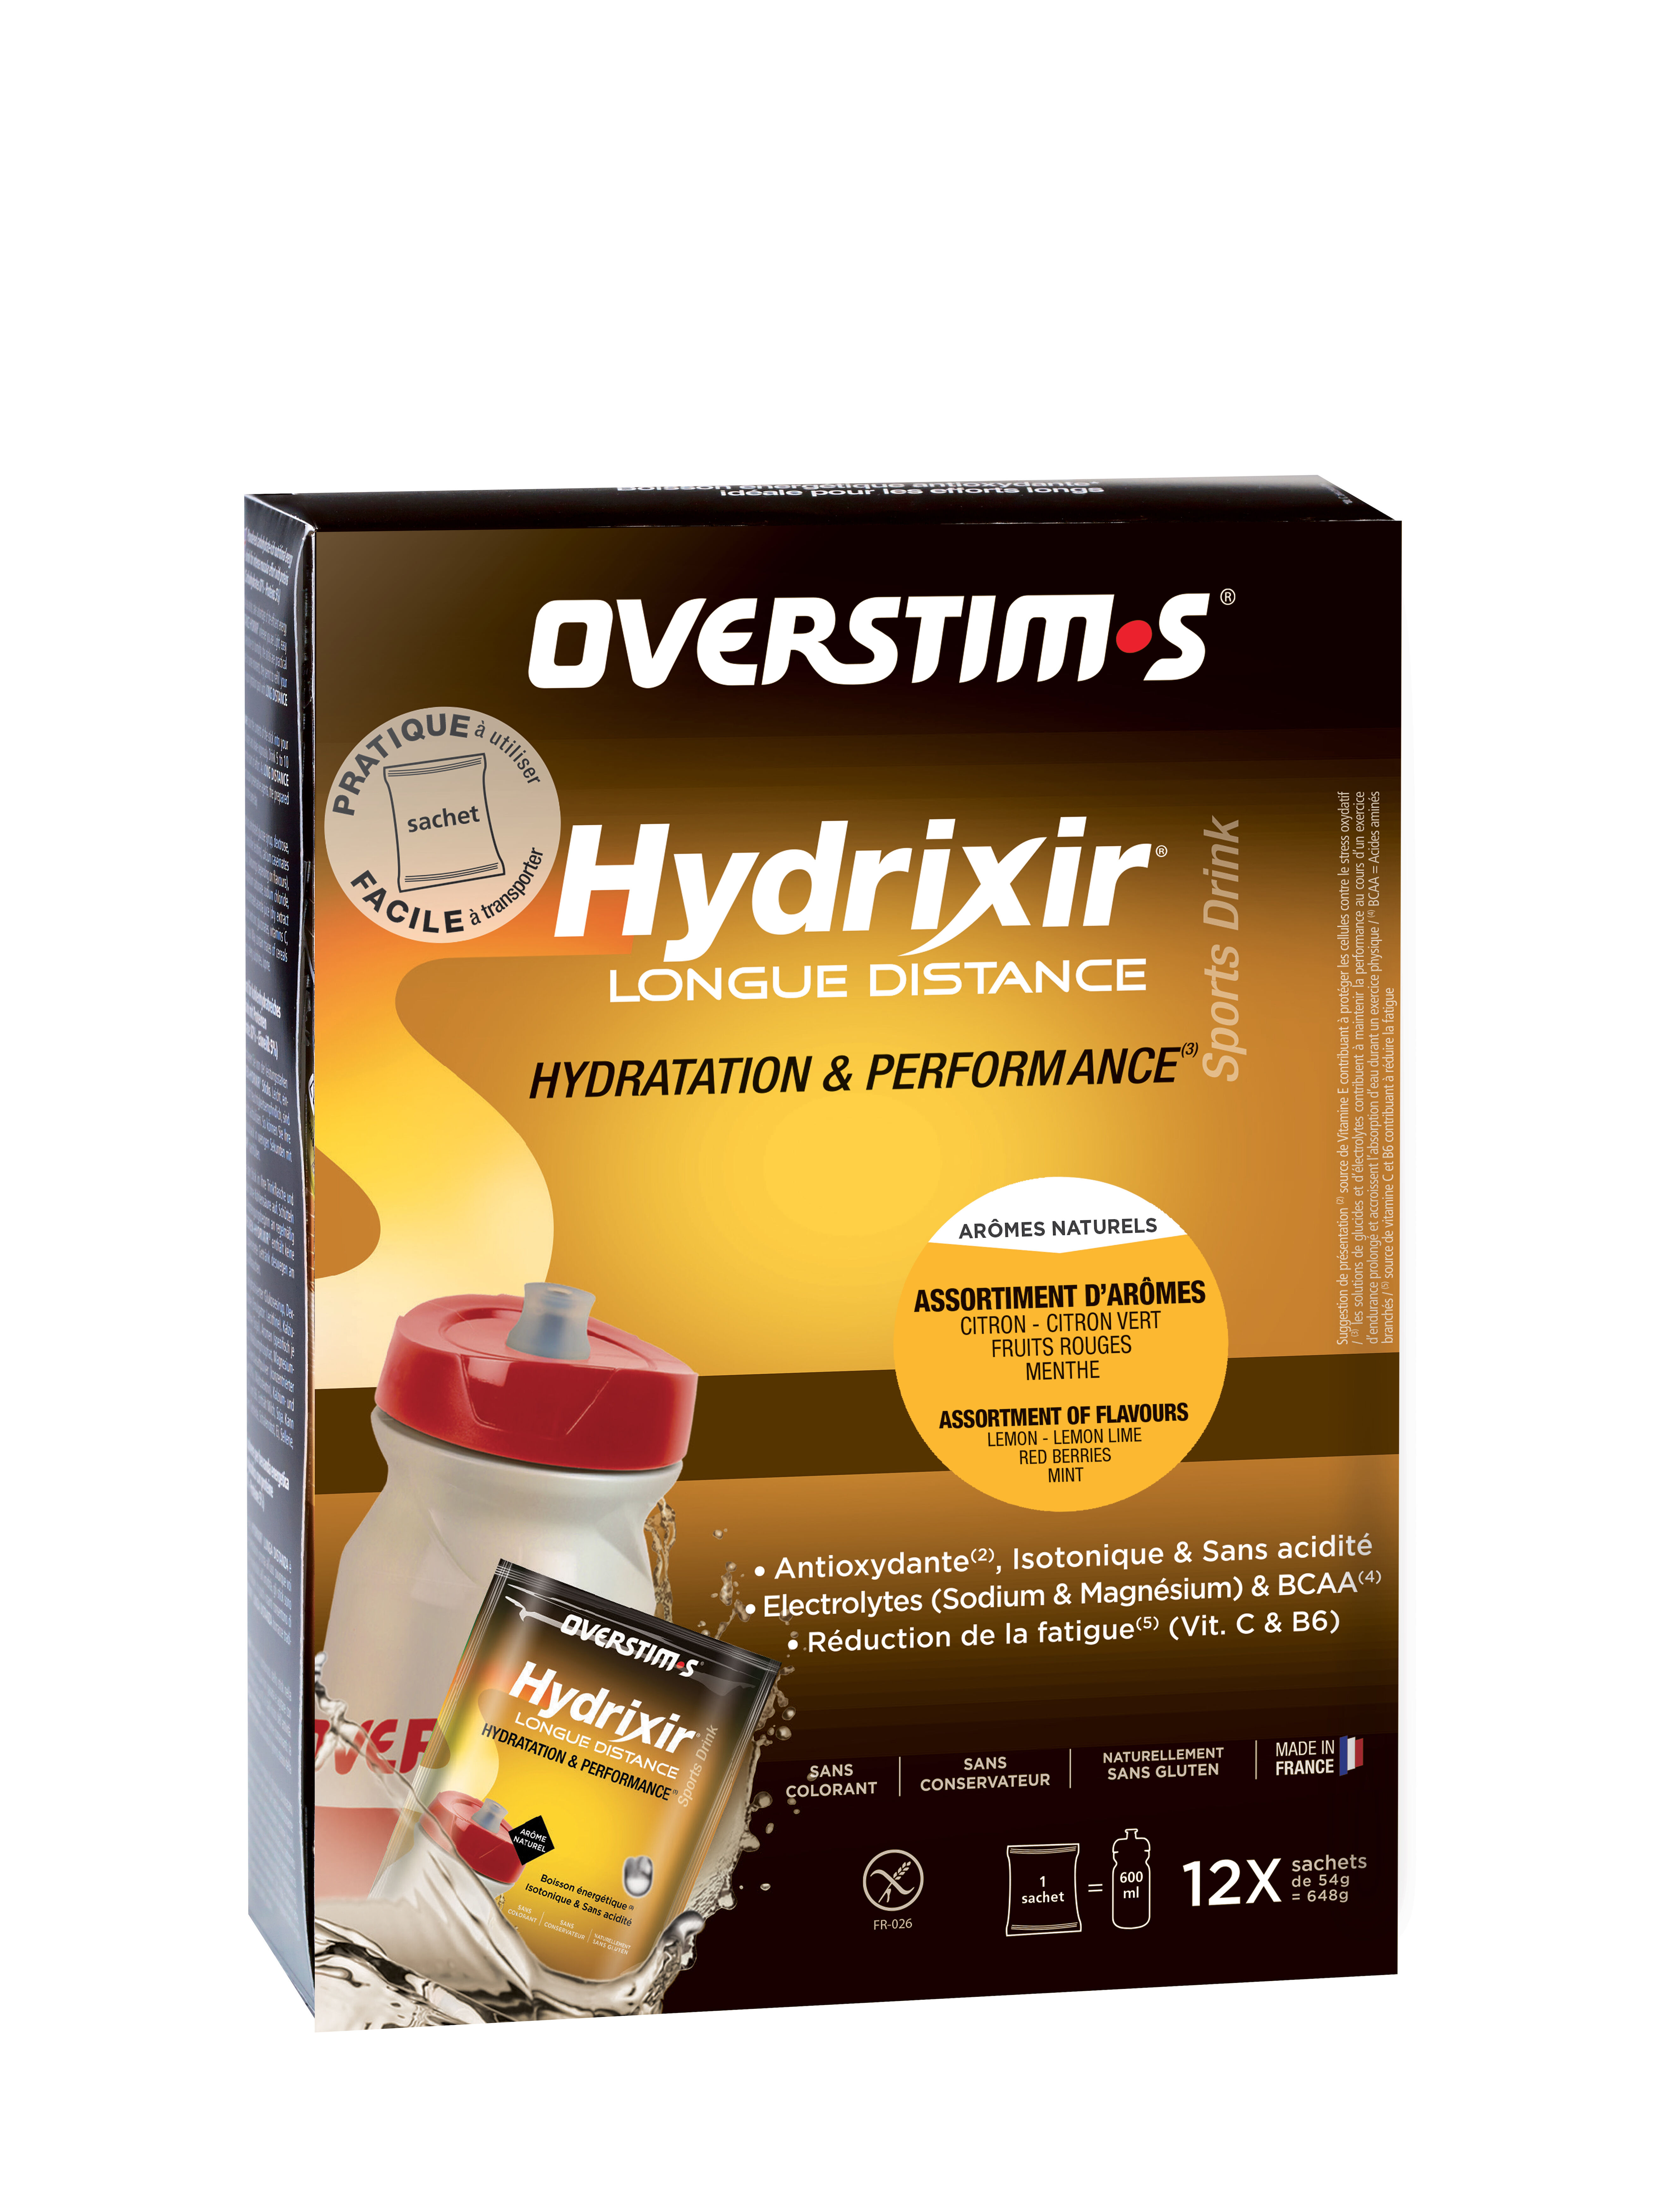 Overstim.s Hydrixir Longue Distance (sachets) - Sport drinks